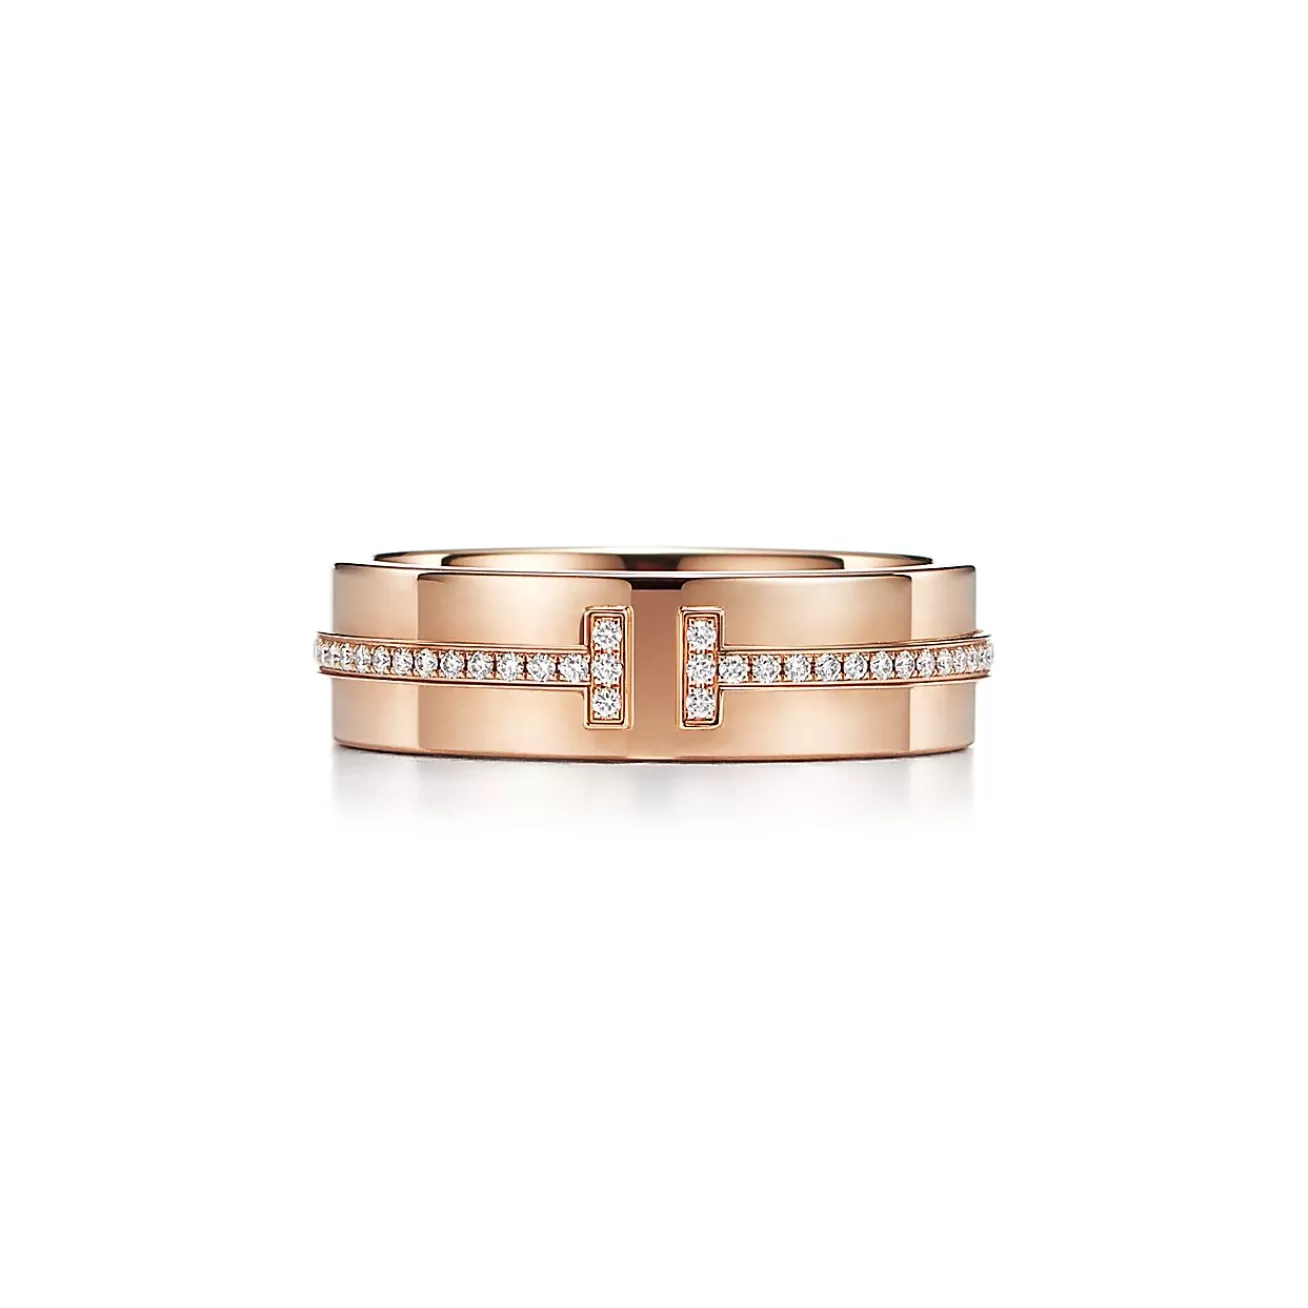 Tiffany & Co. Tiffany T wide diamond ring in 18k rose gold, 5.5 mm wide. | ^Women Rings | Men's Jewelry